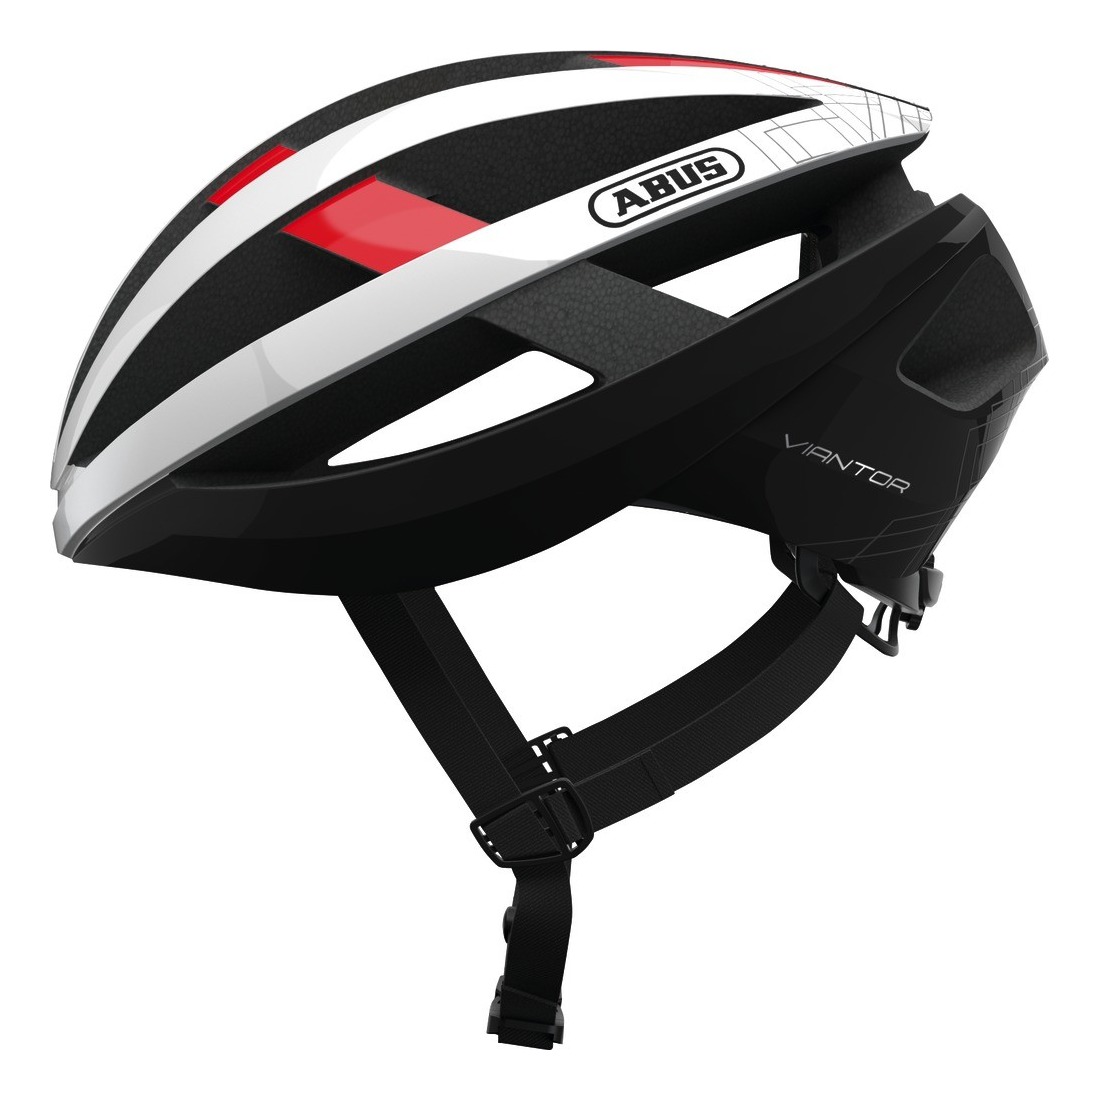 helmet VIANTOR blaze, ABUS (black/white/red)